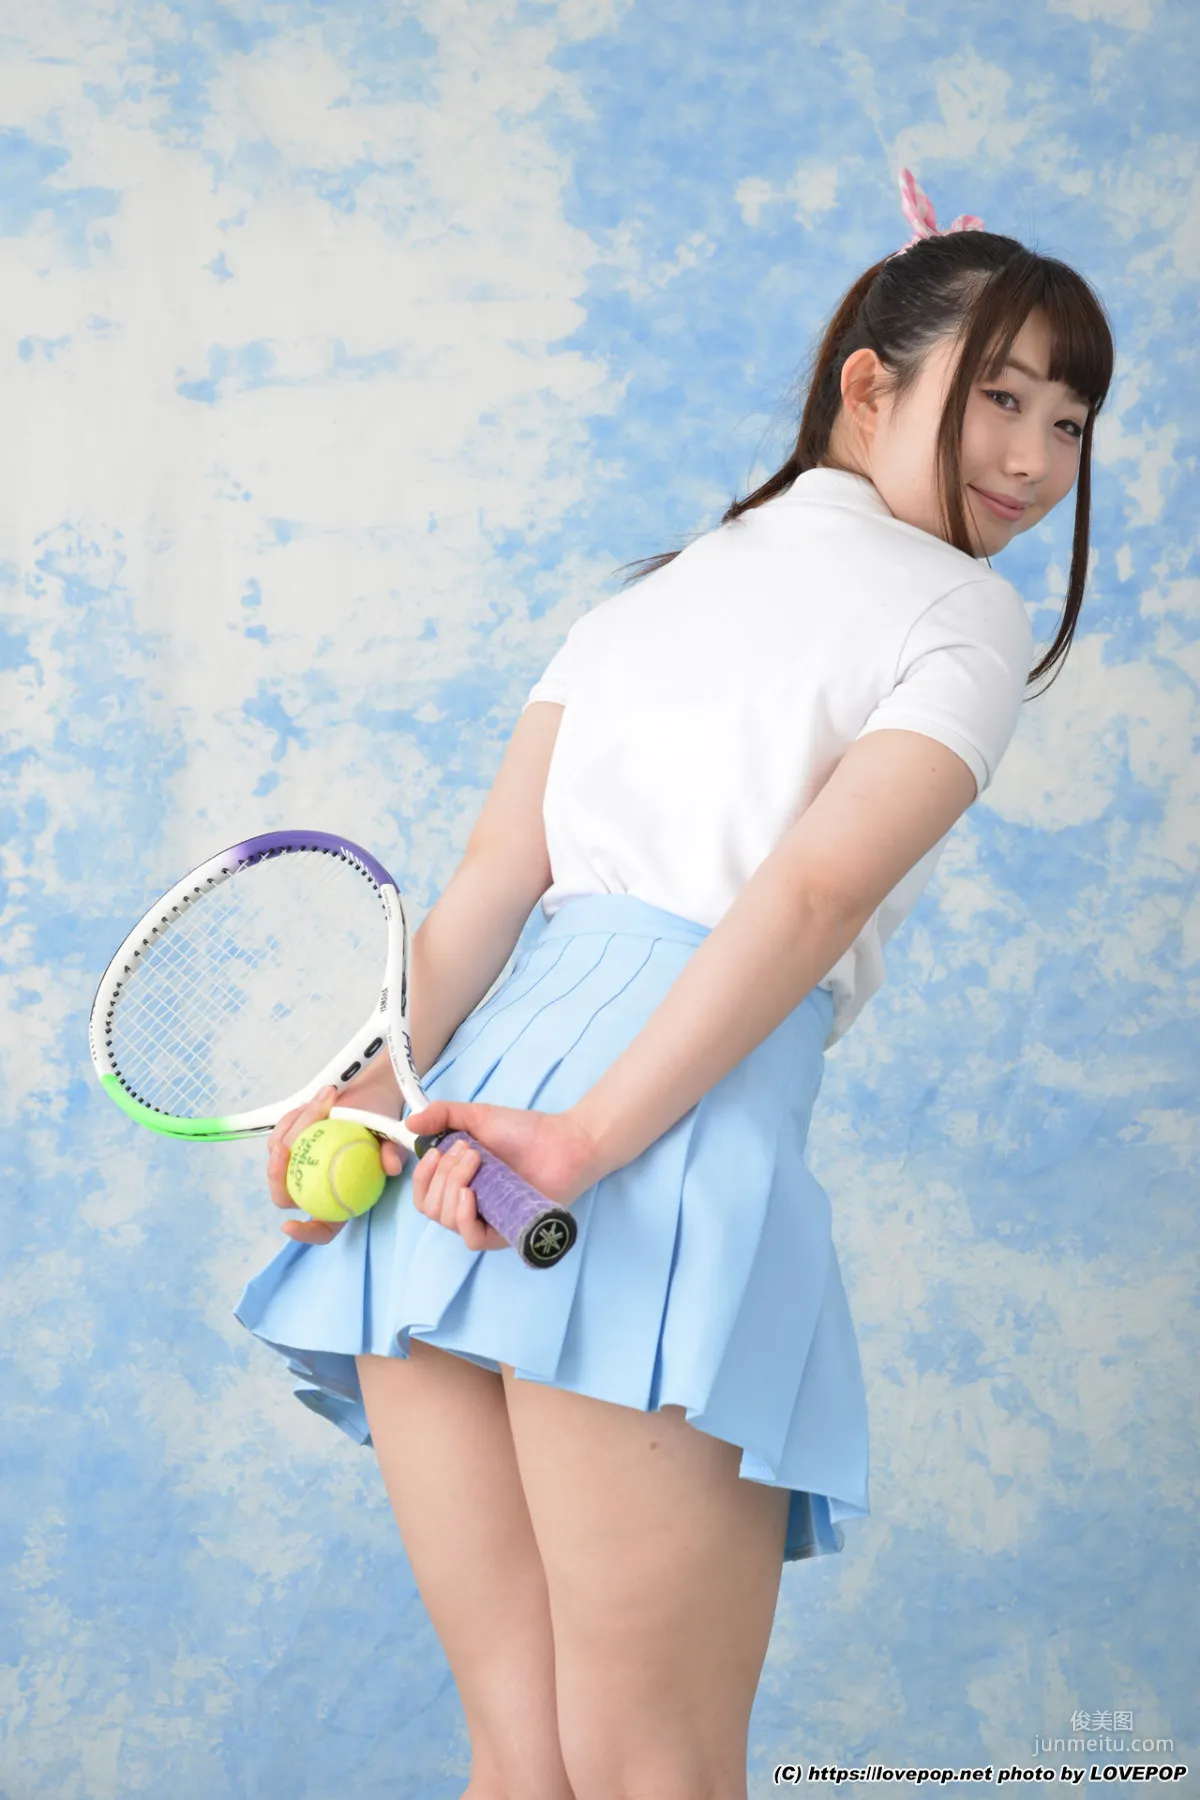 あゆな虹恋/鲇菜虹恋《tennis ball and racket ! - PPV》 [LOVEPOP] 写真集12